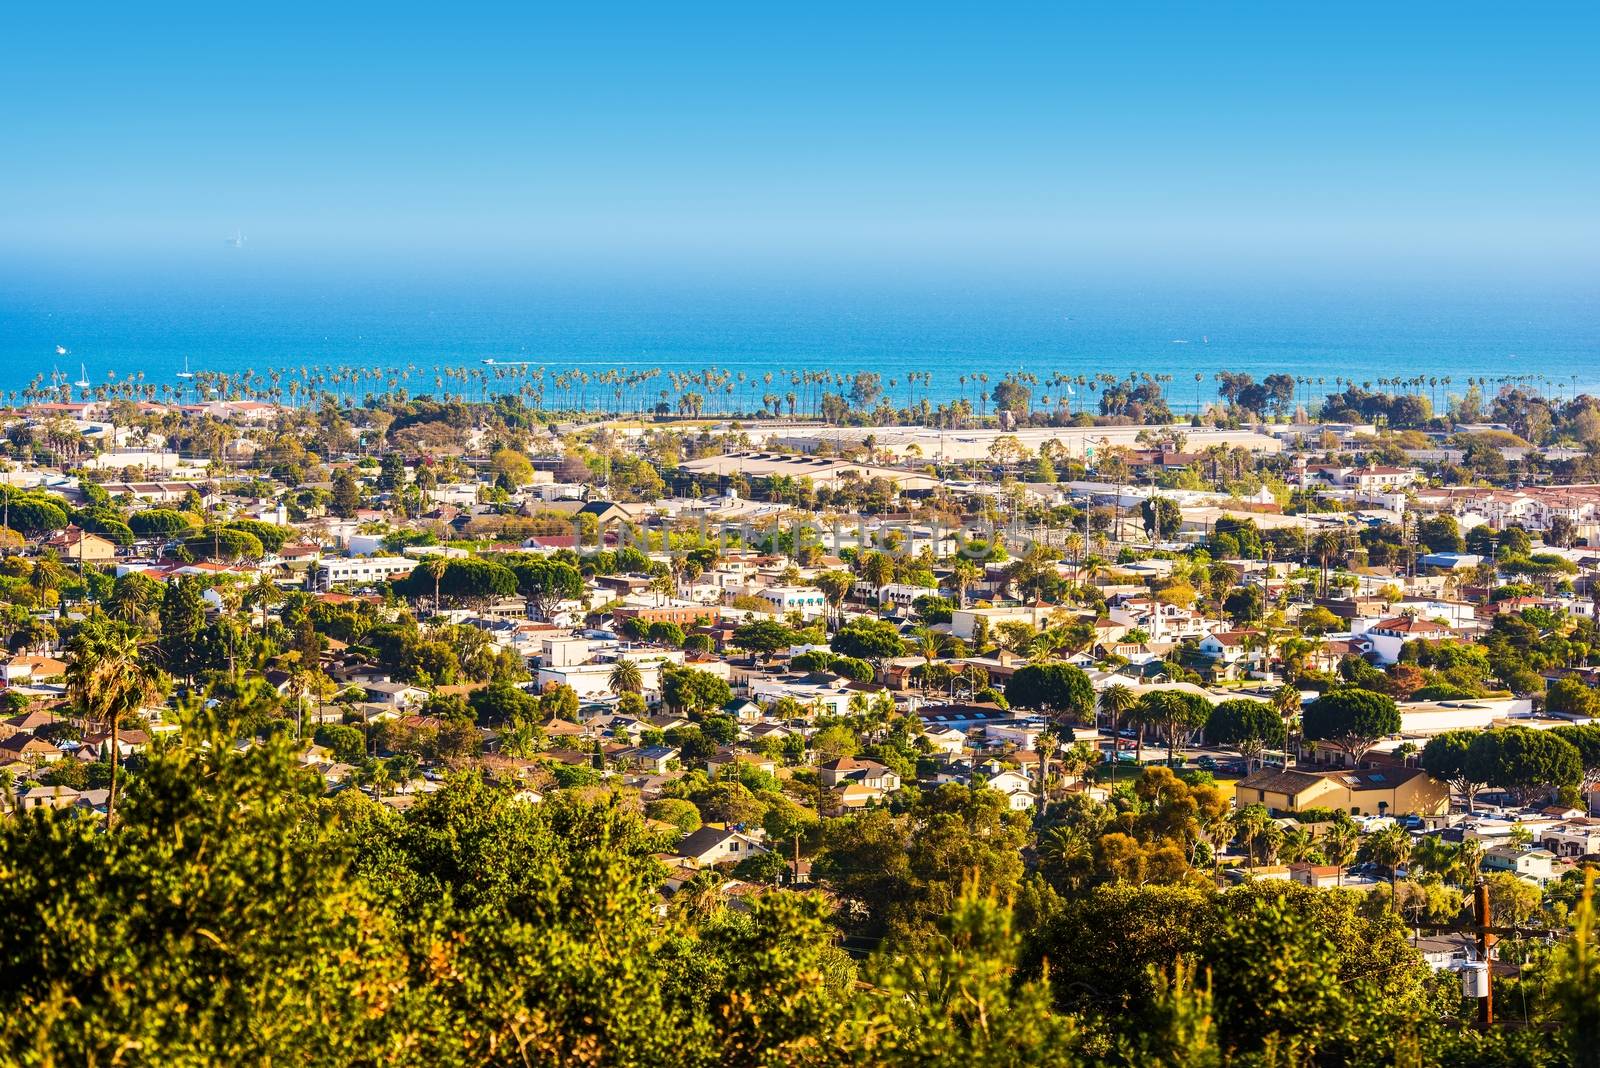 Santa Barbara Panorama by welcomia